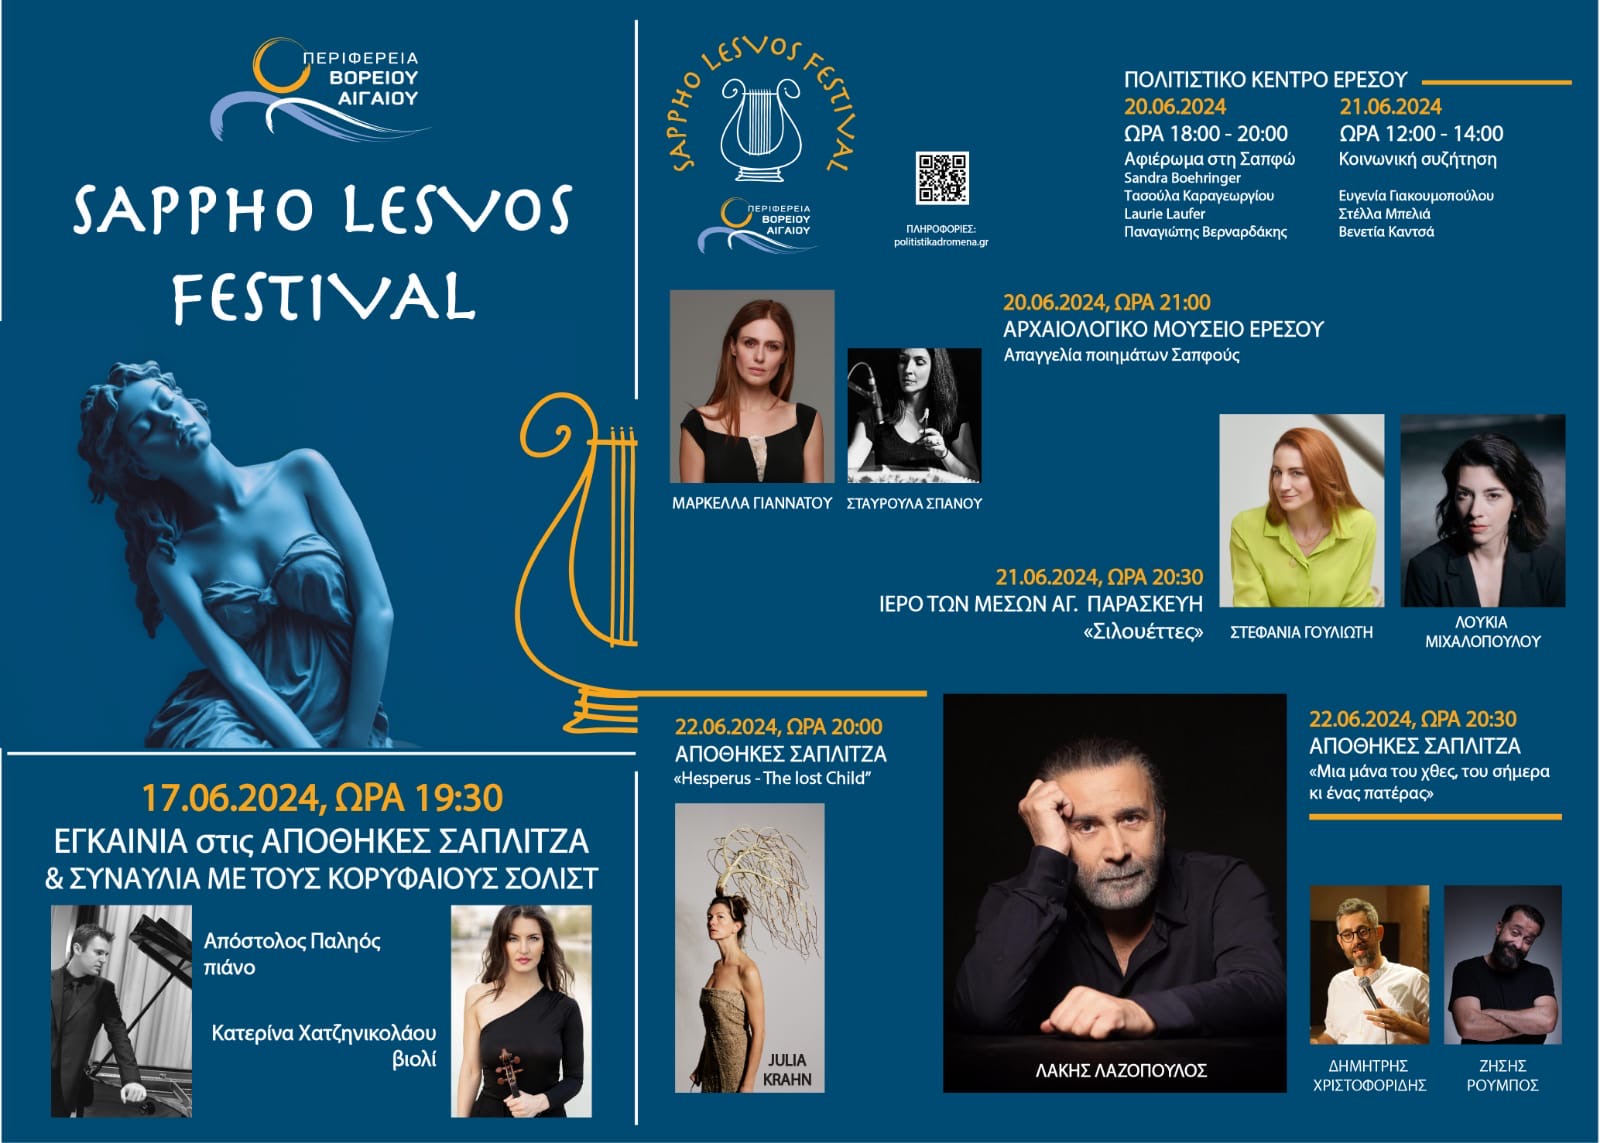 Το SAPPHO LESVOS FESTIVAL για πρώτη φορά θα πραγματοποιηθεί στις 20 Ιουνίου στη Λέσβο